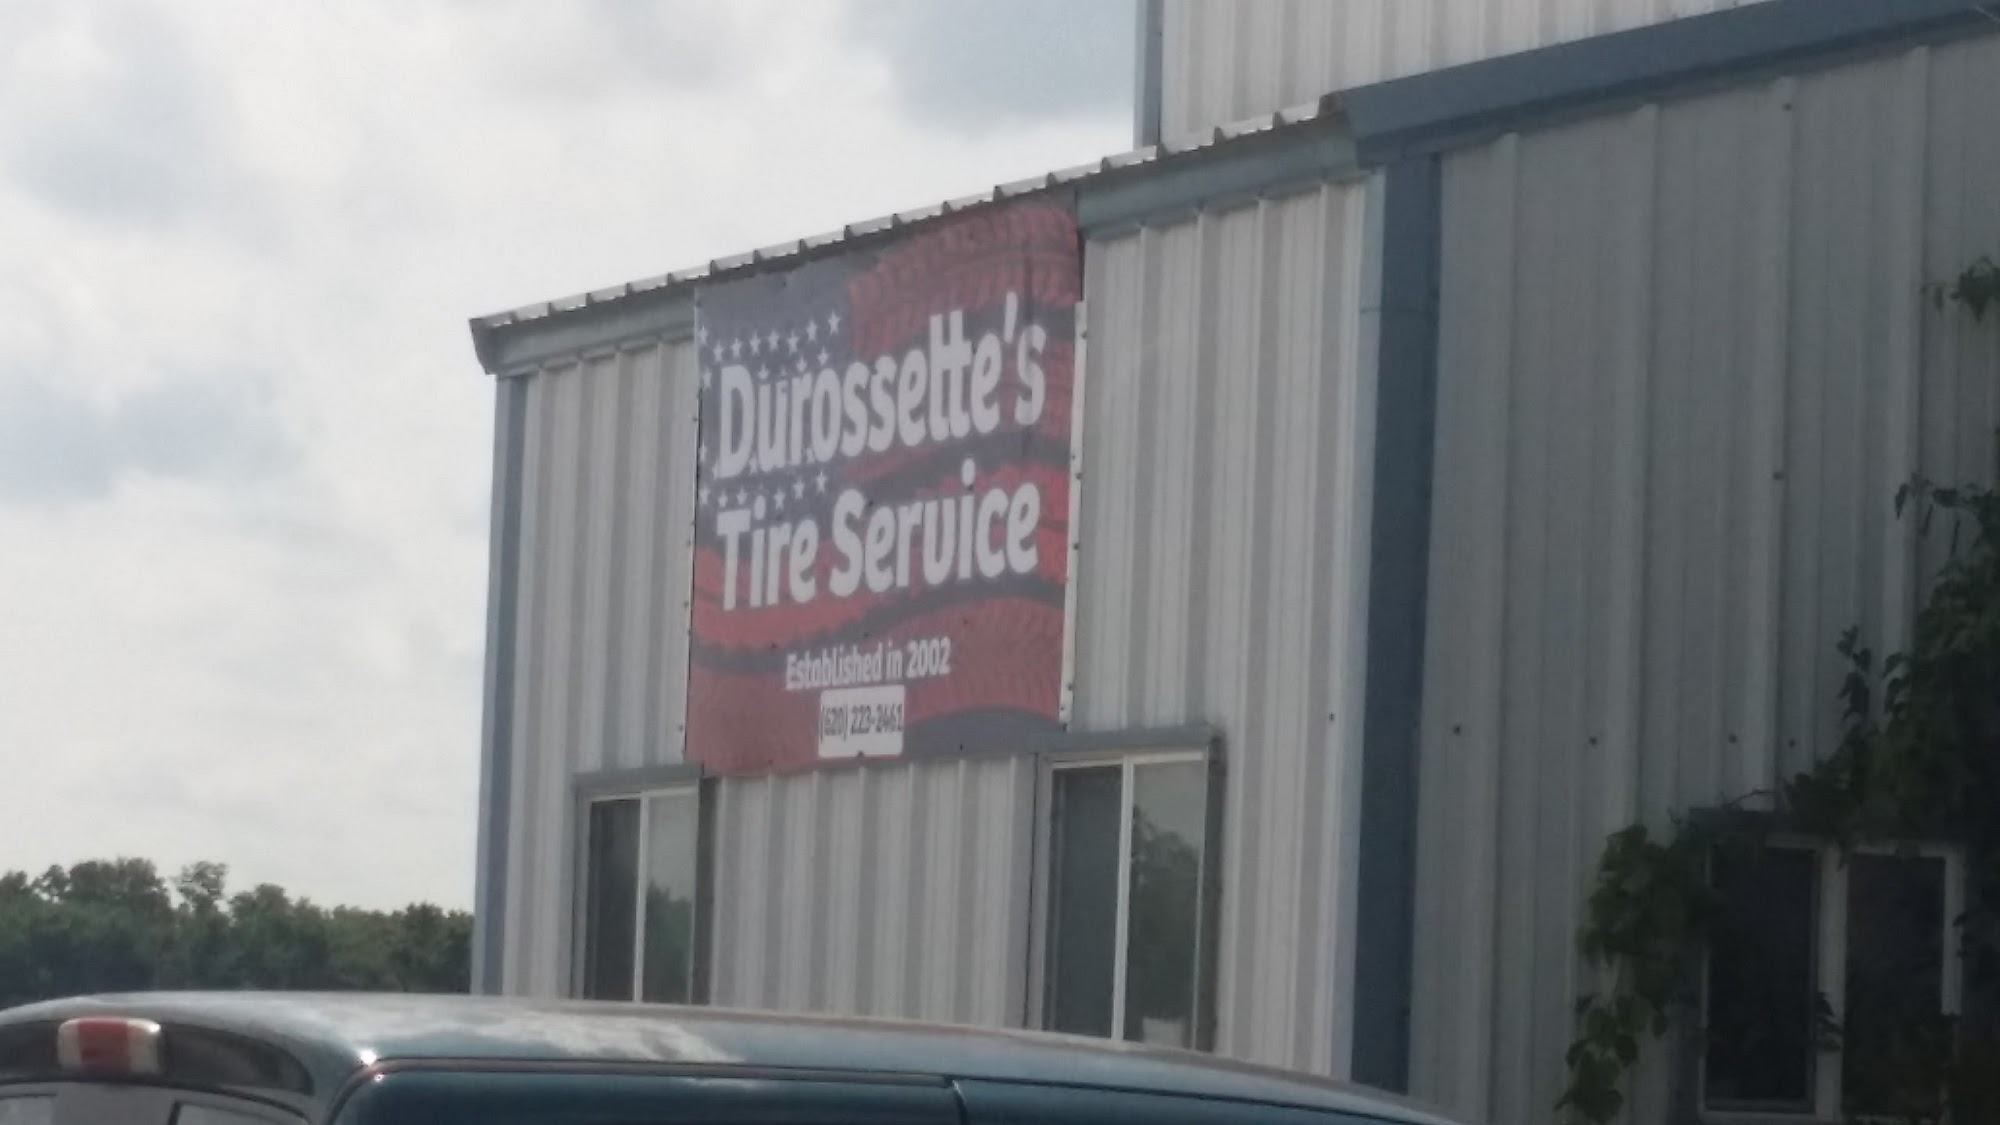 Durossette's Tire Services